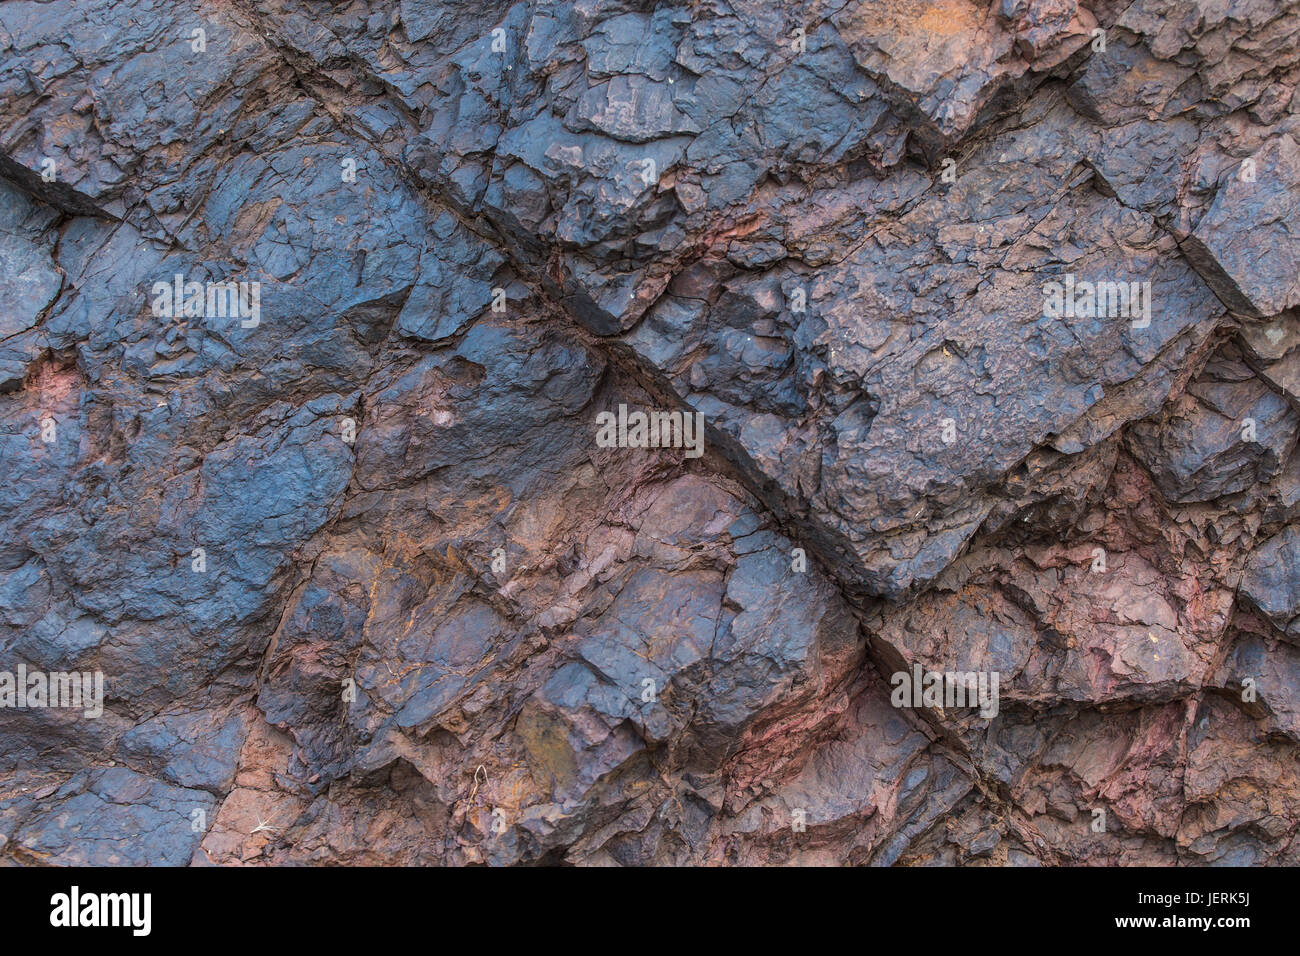 La texture du minerai de fer close up - minéraux naturels dans la mine. La texture de pierre de mine à ciel ouvert. Extraction de minéraux pour l'industrie lourde - la texture de la roche contenant du minerai de fer et de cuivre. Banque D'Images